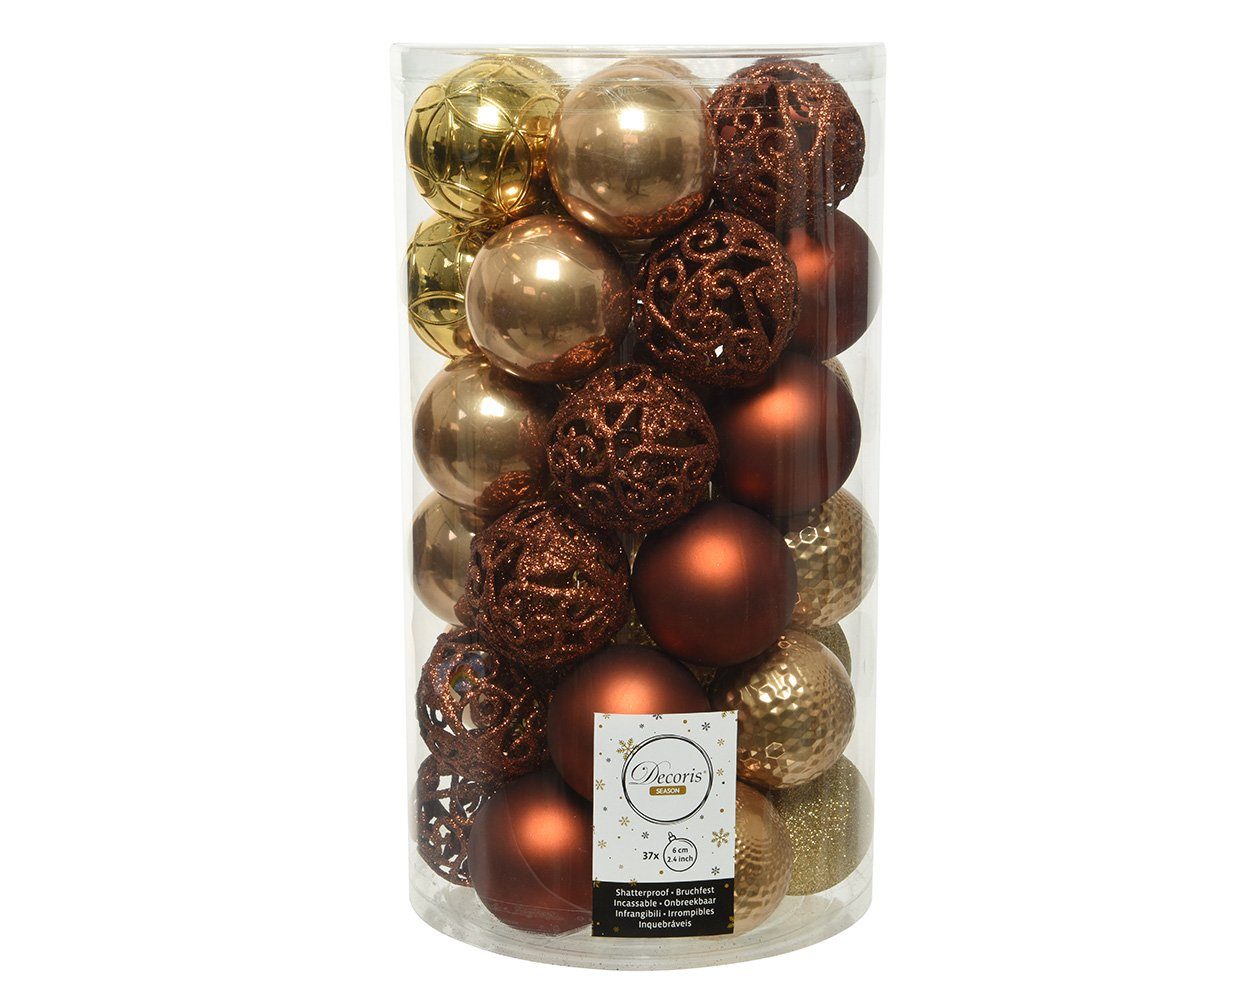 37er Set season Decoris gold, 6cm Kunststoff decorations braun Weihnachtsbaumkugel, Weihnachtskugeln Ornamente /